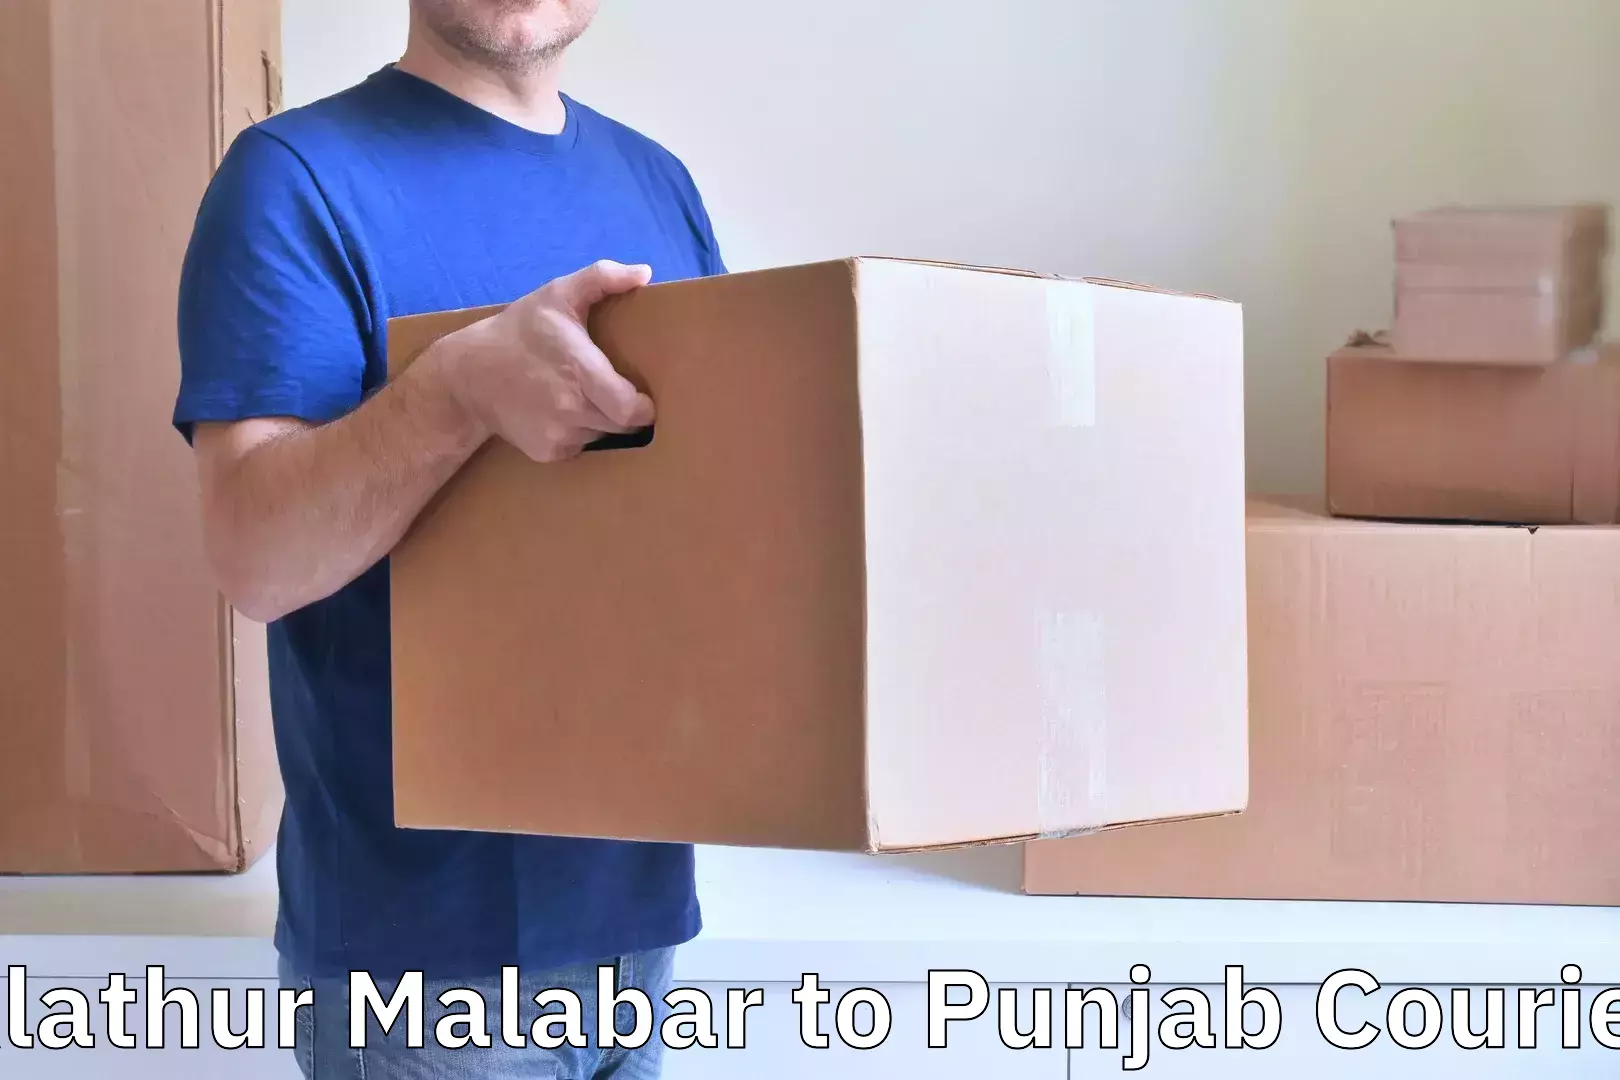 Baggage shipping service Alathur Malabar to Patti Tarn Tara